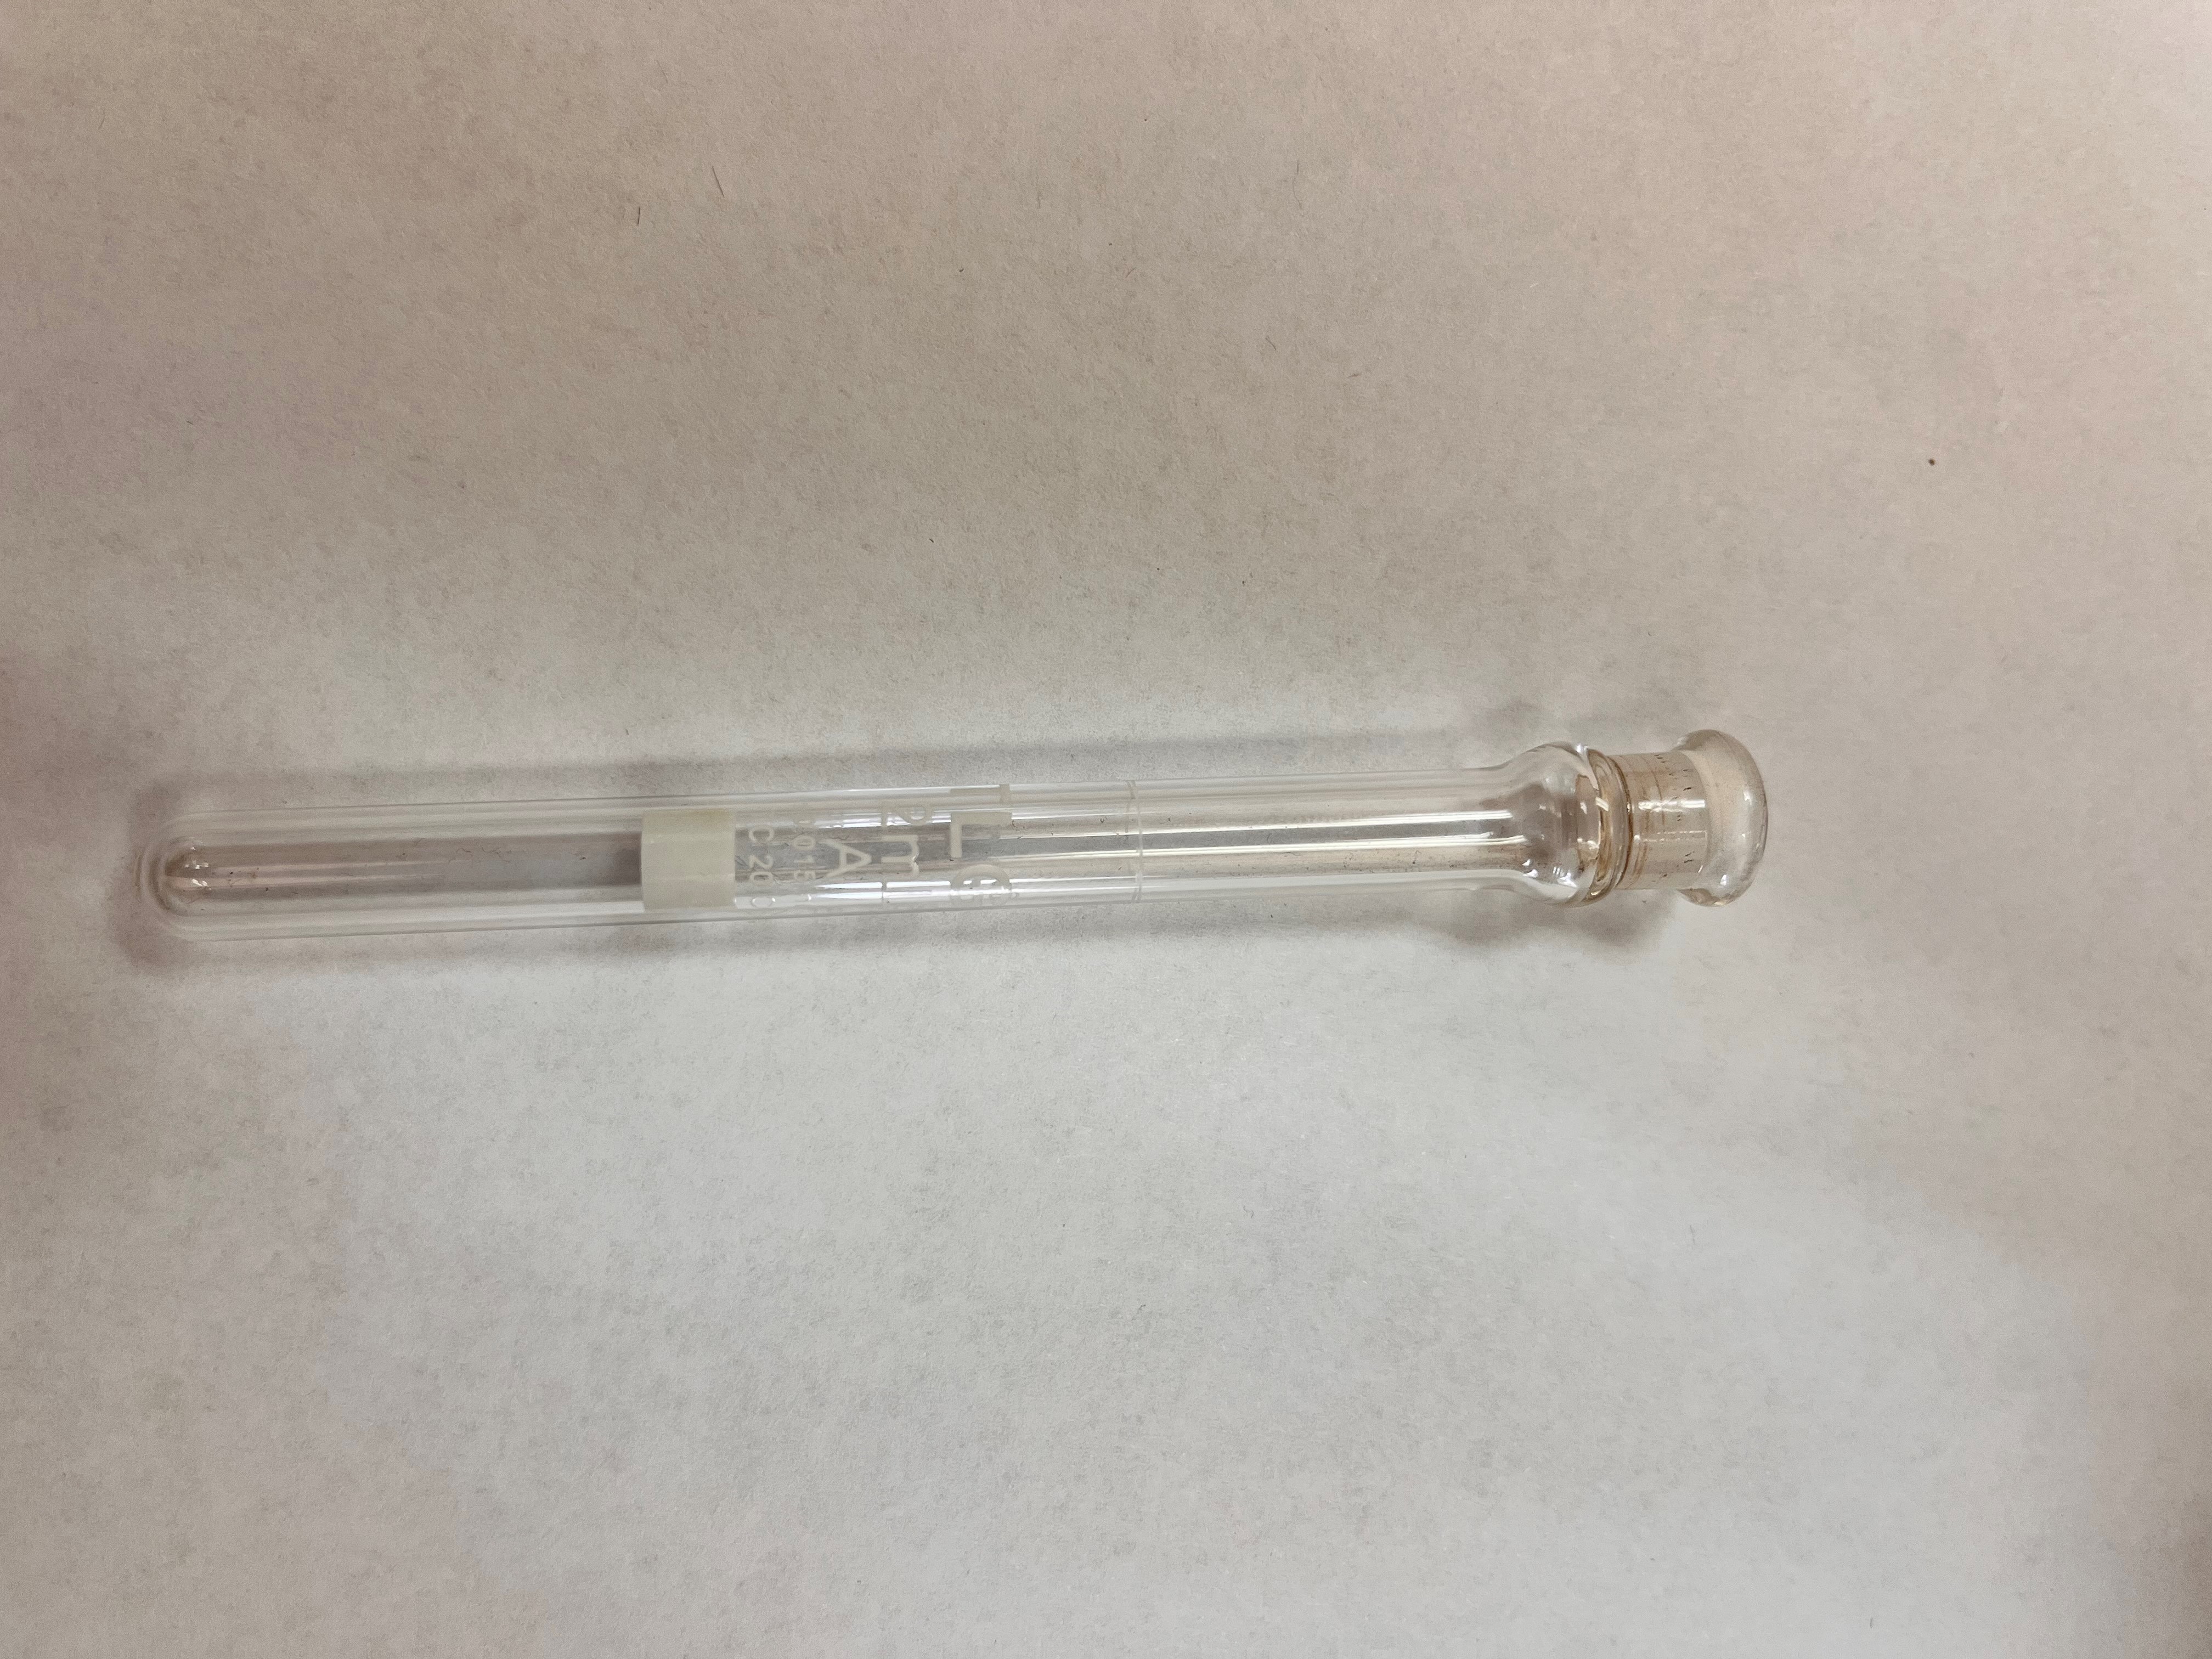 Fiole jauge, classe A, micro-chelle, type tube essai, selon les normes USP